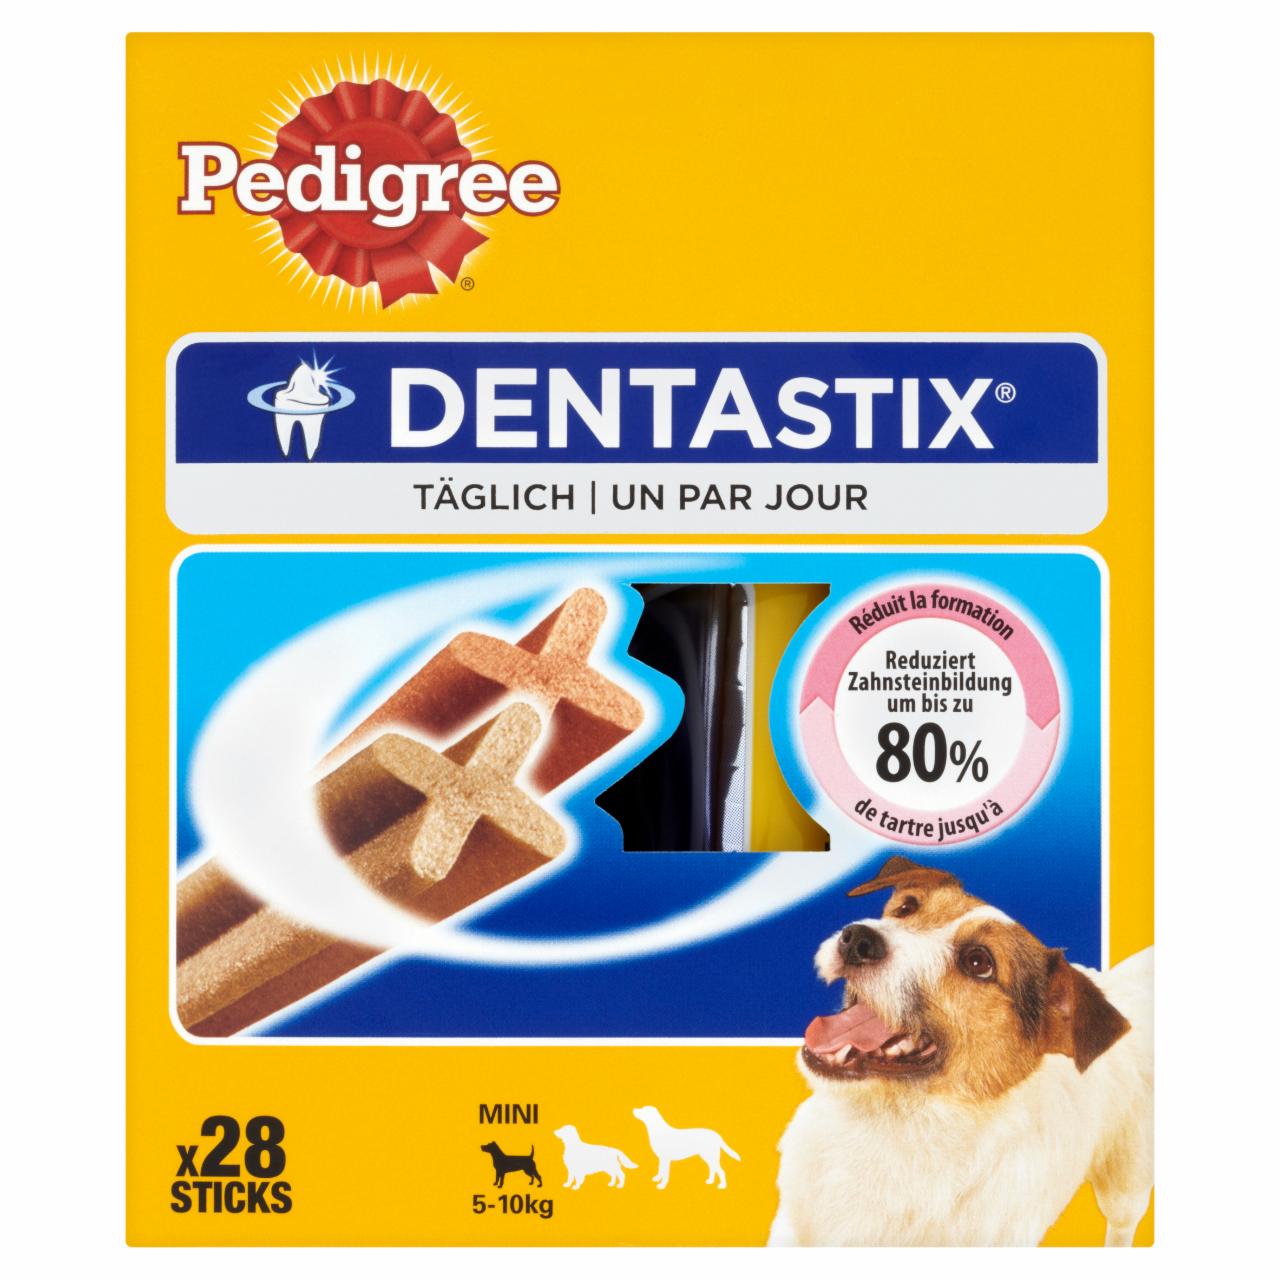 Képek - Pedigree Denta Stix Multi kiegészítő állateledel kistestű kutyák számára 28 db 440 g